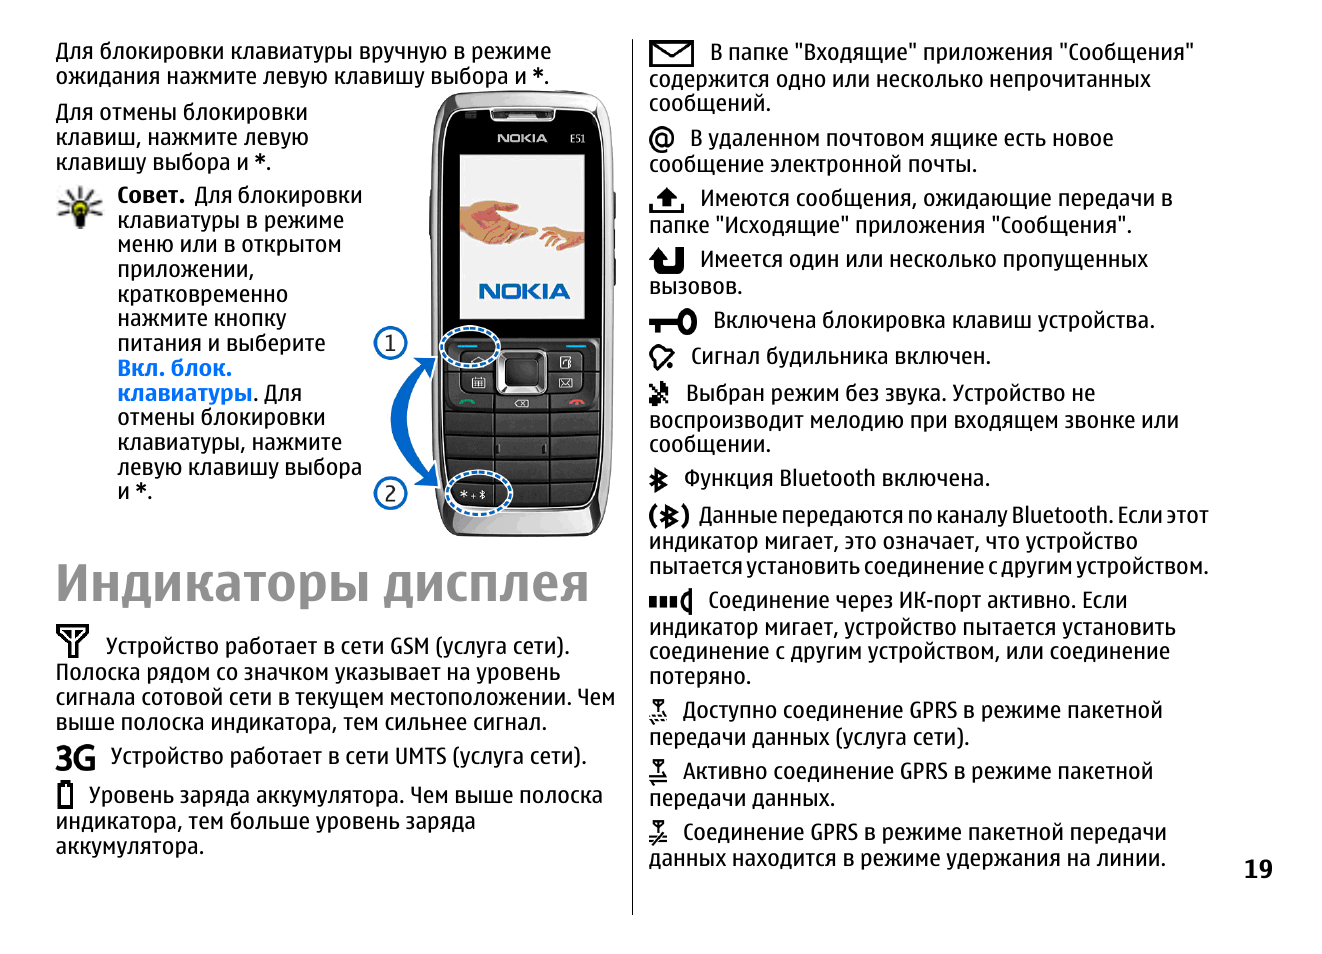 Как установить русский язык на андроид